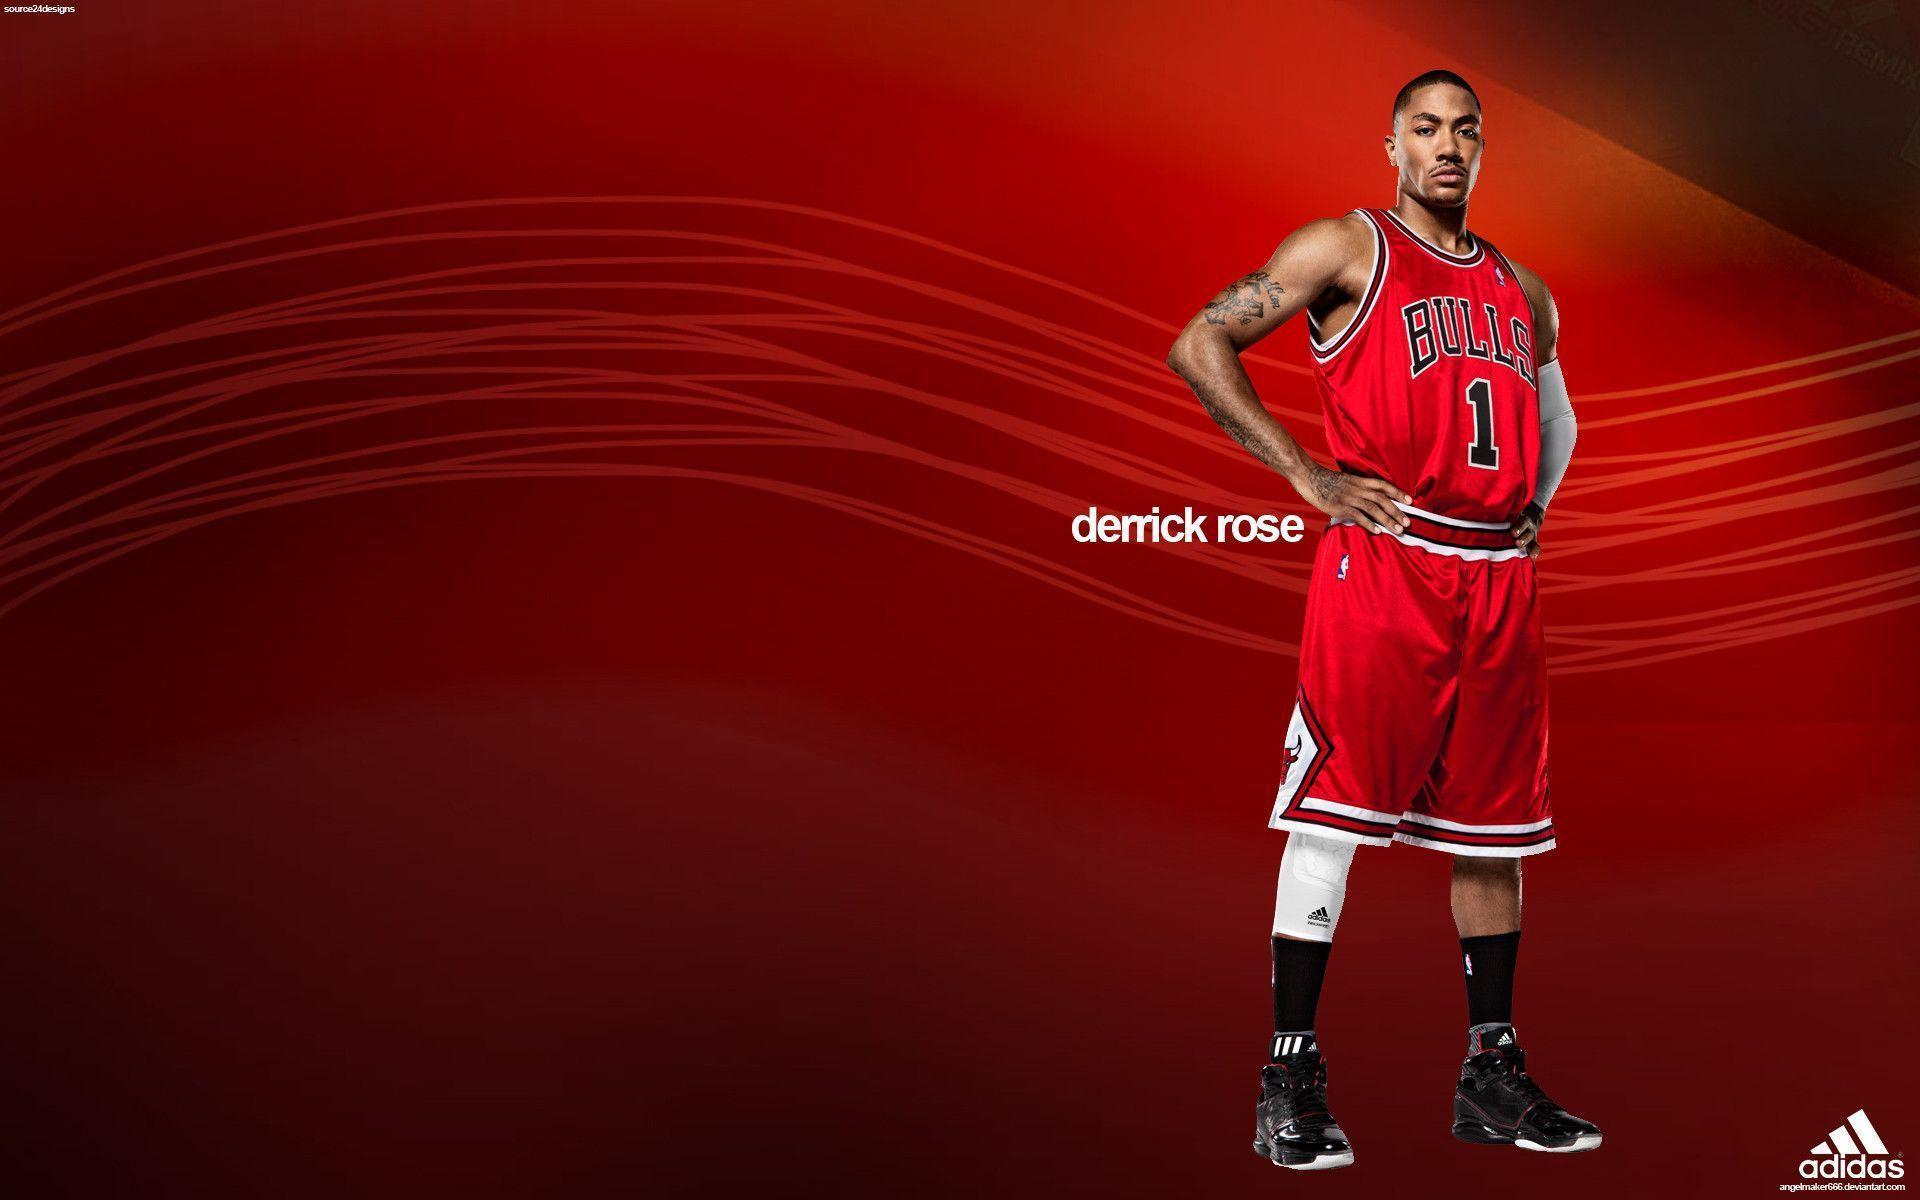 derrick rose basketball wallpaper 2014